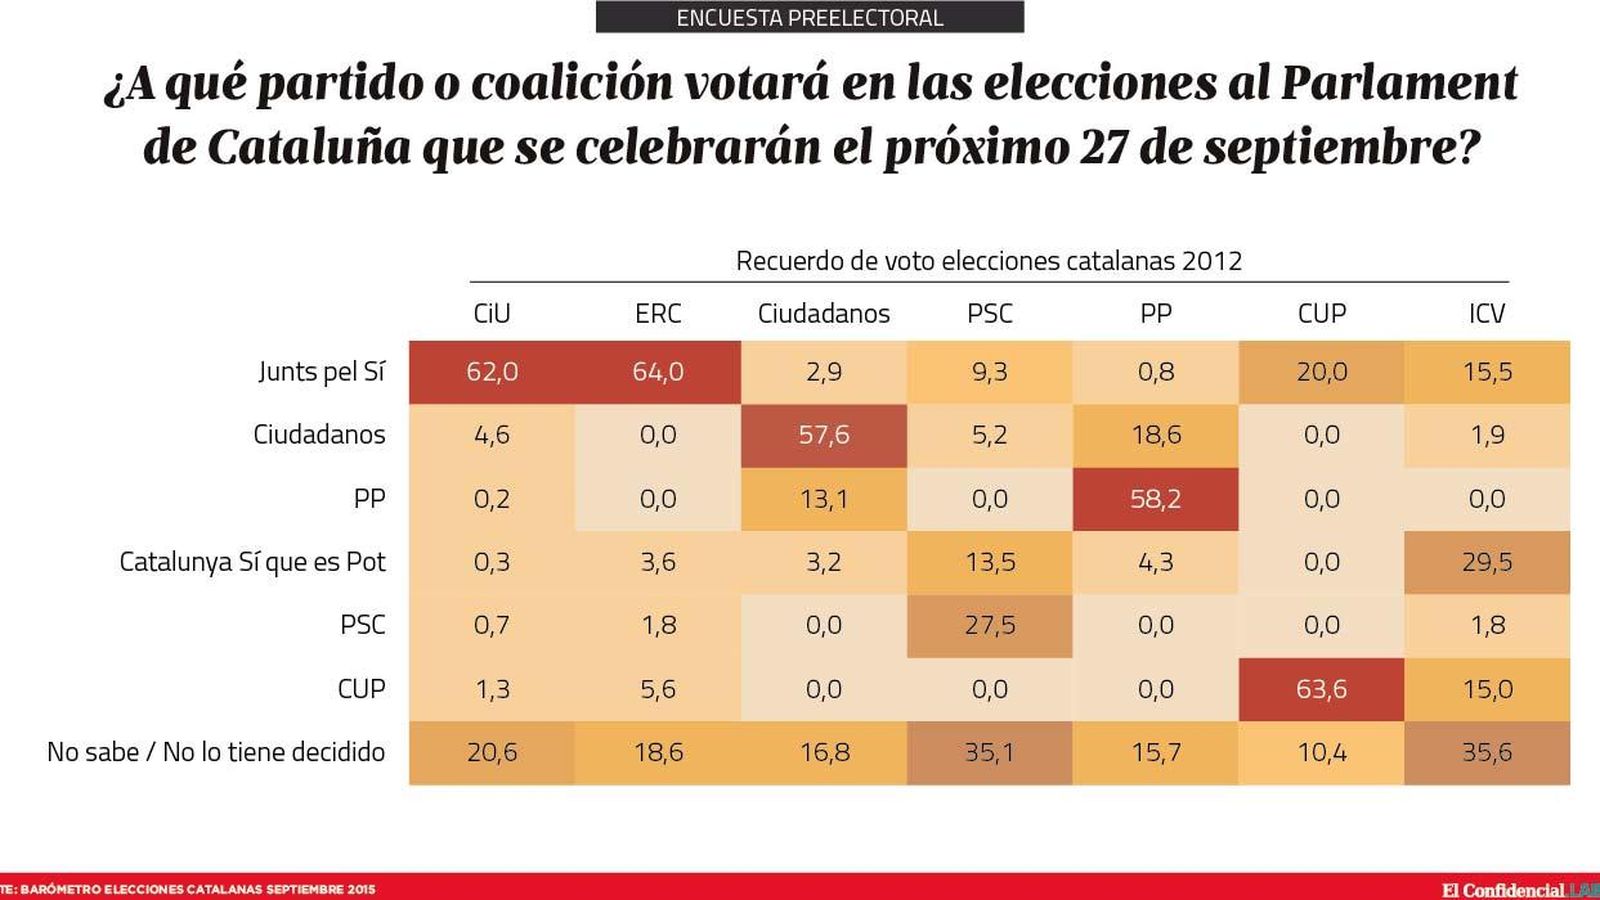 Foto: El trasvase de votos de las elecciones catalanas para el 27-S, según el estudio de DYM para 'El Confidencial'.